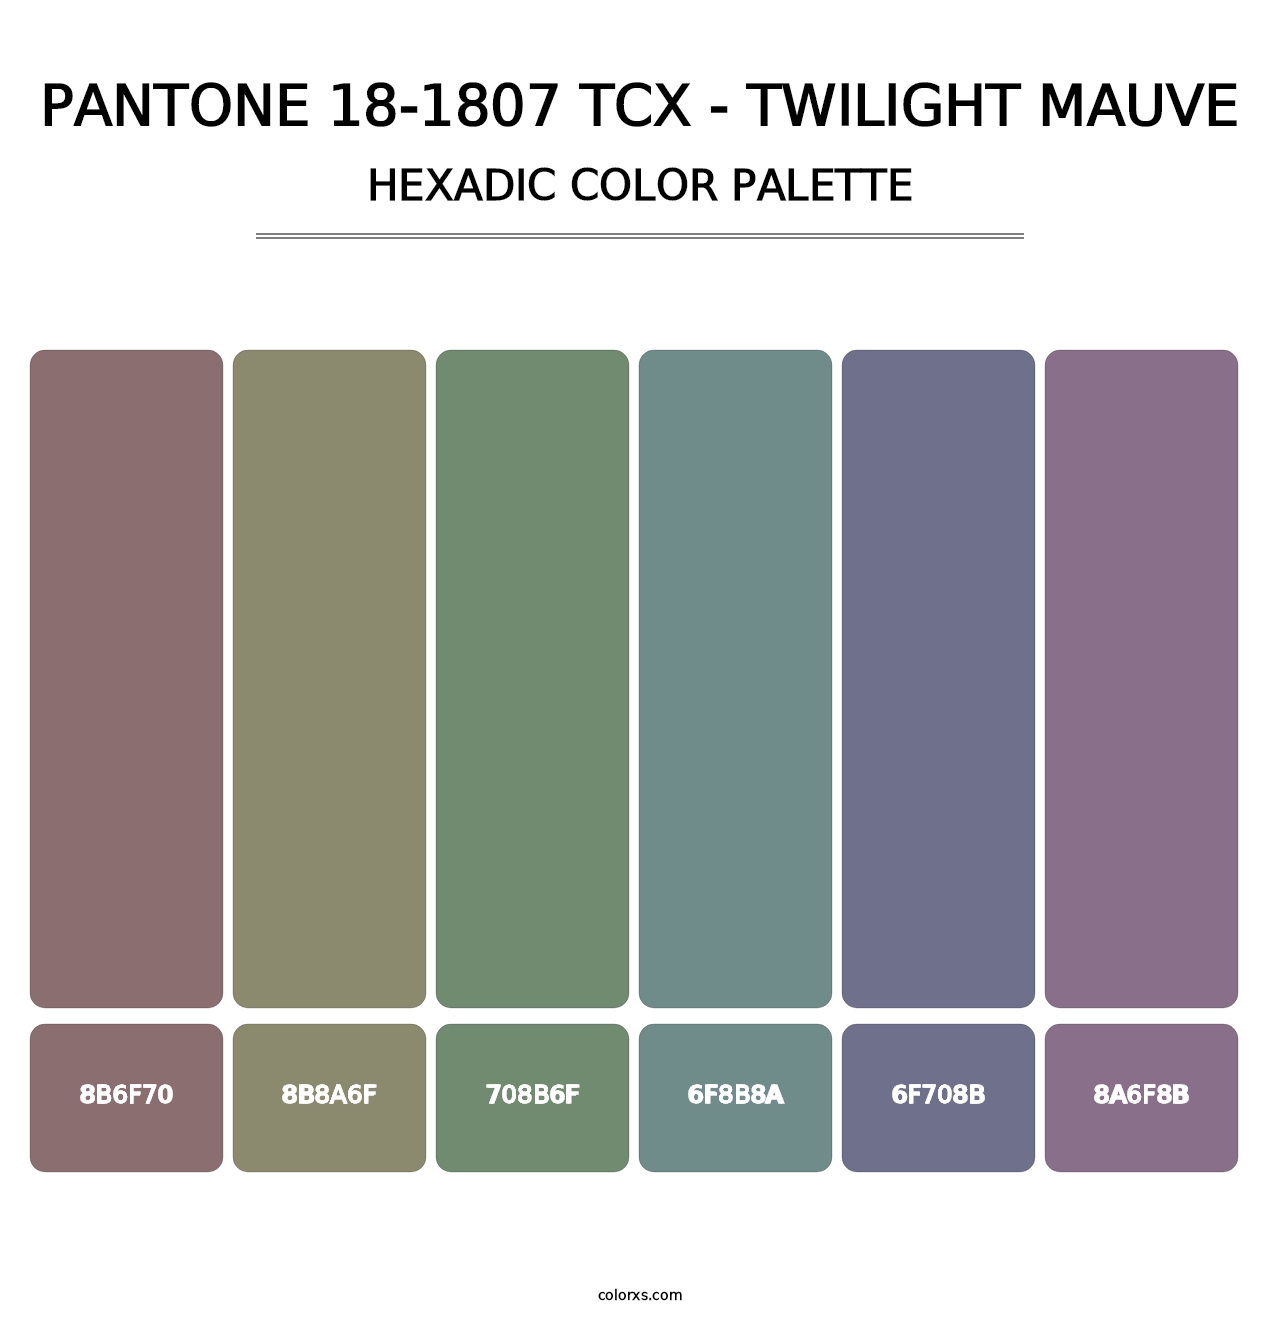 PANTONE 18-1807 TCX - Twilight Mauve - Hexadic Color Palette